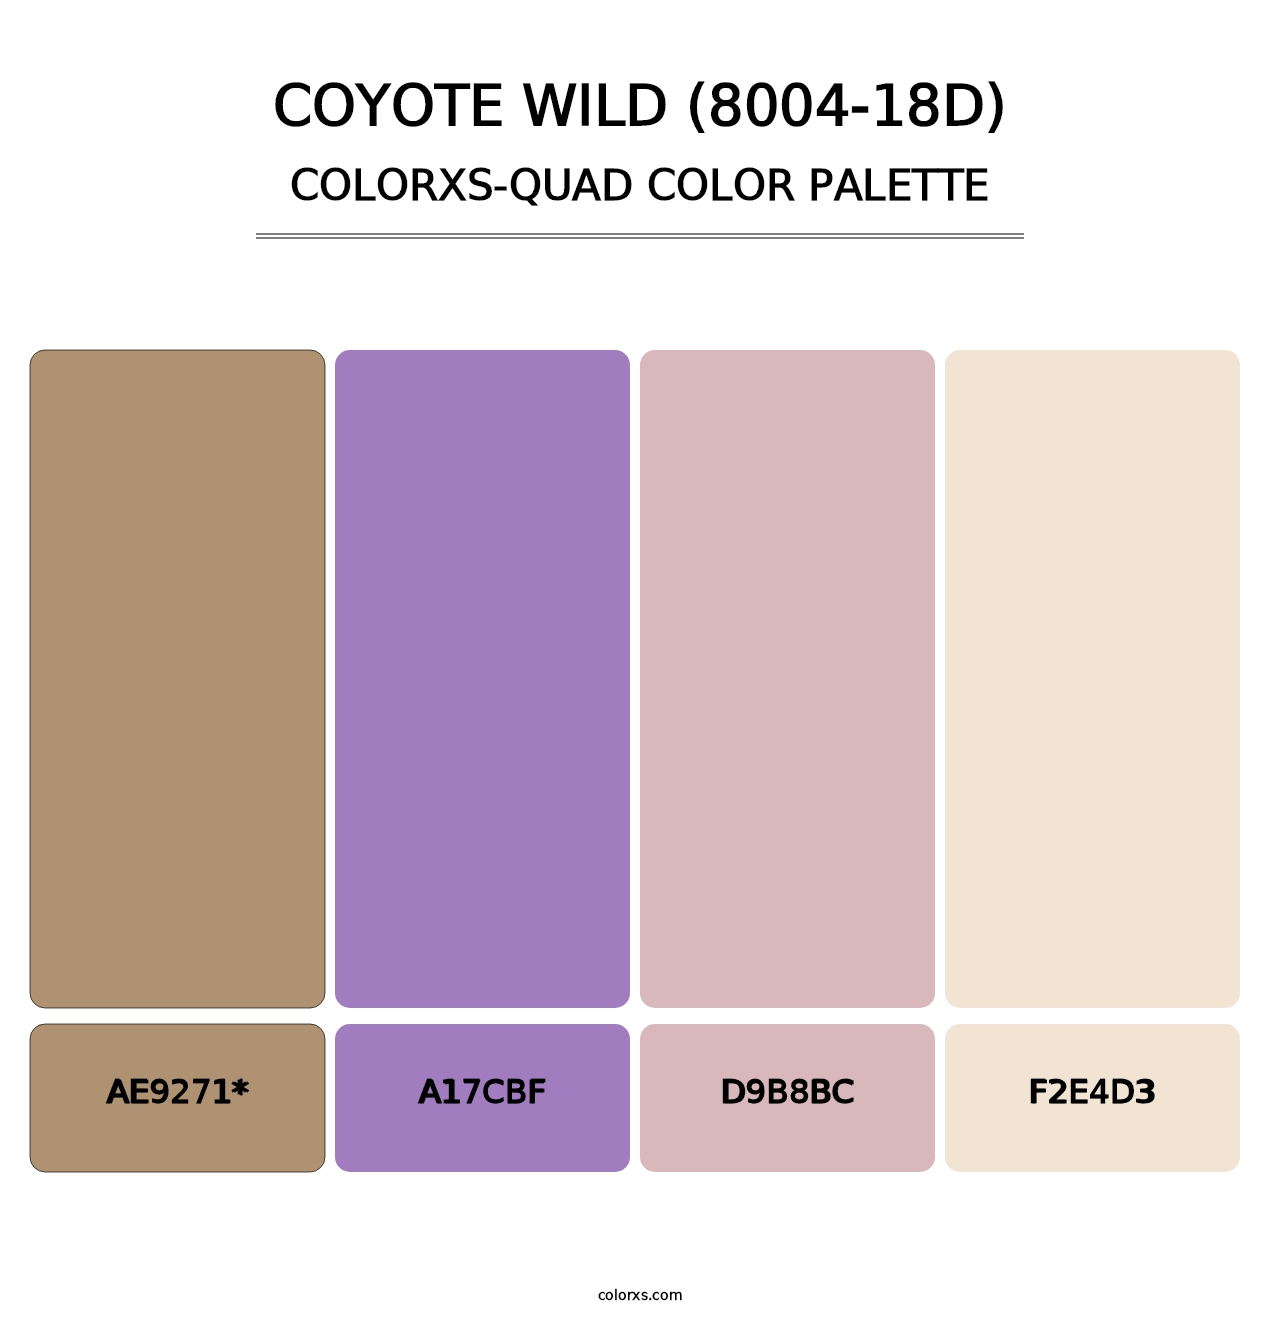 Coyote Wild (8004-18D) - Colorxs Quad Palette